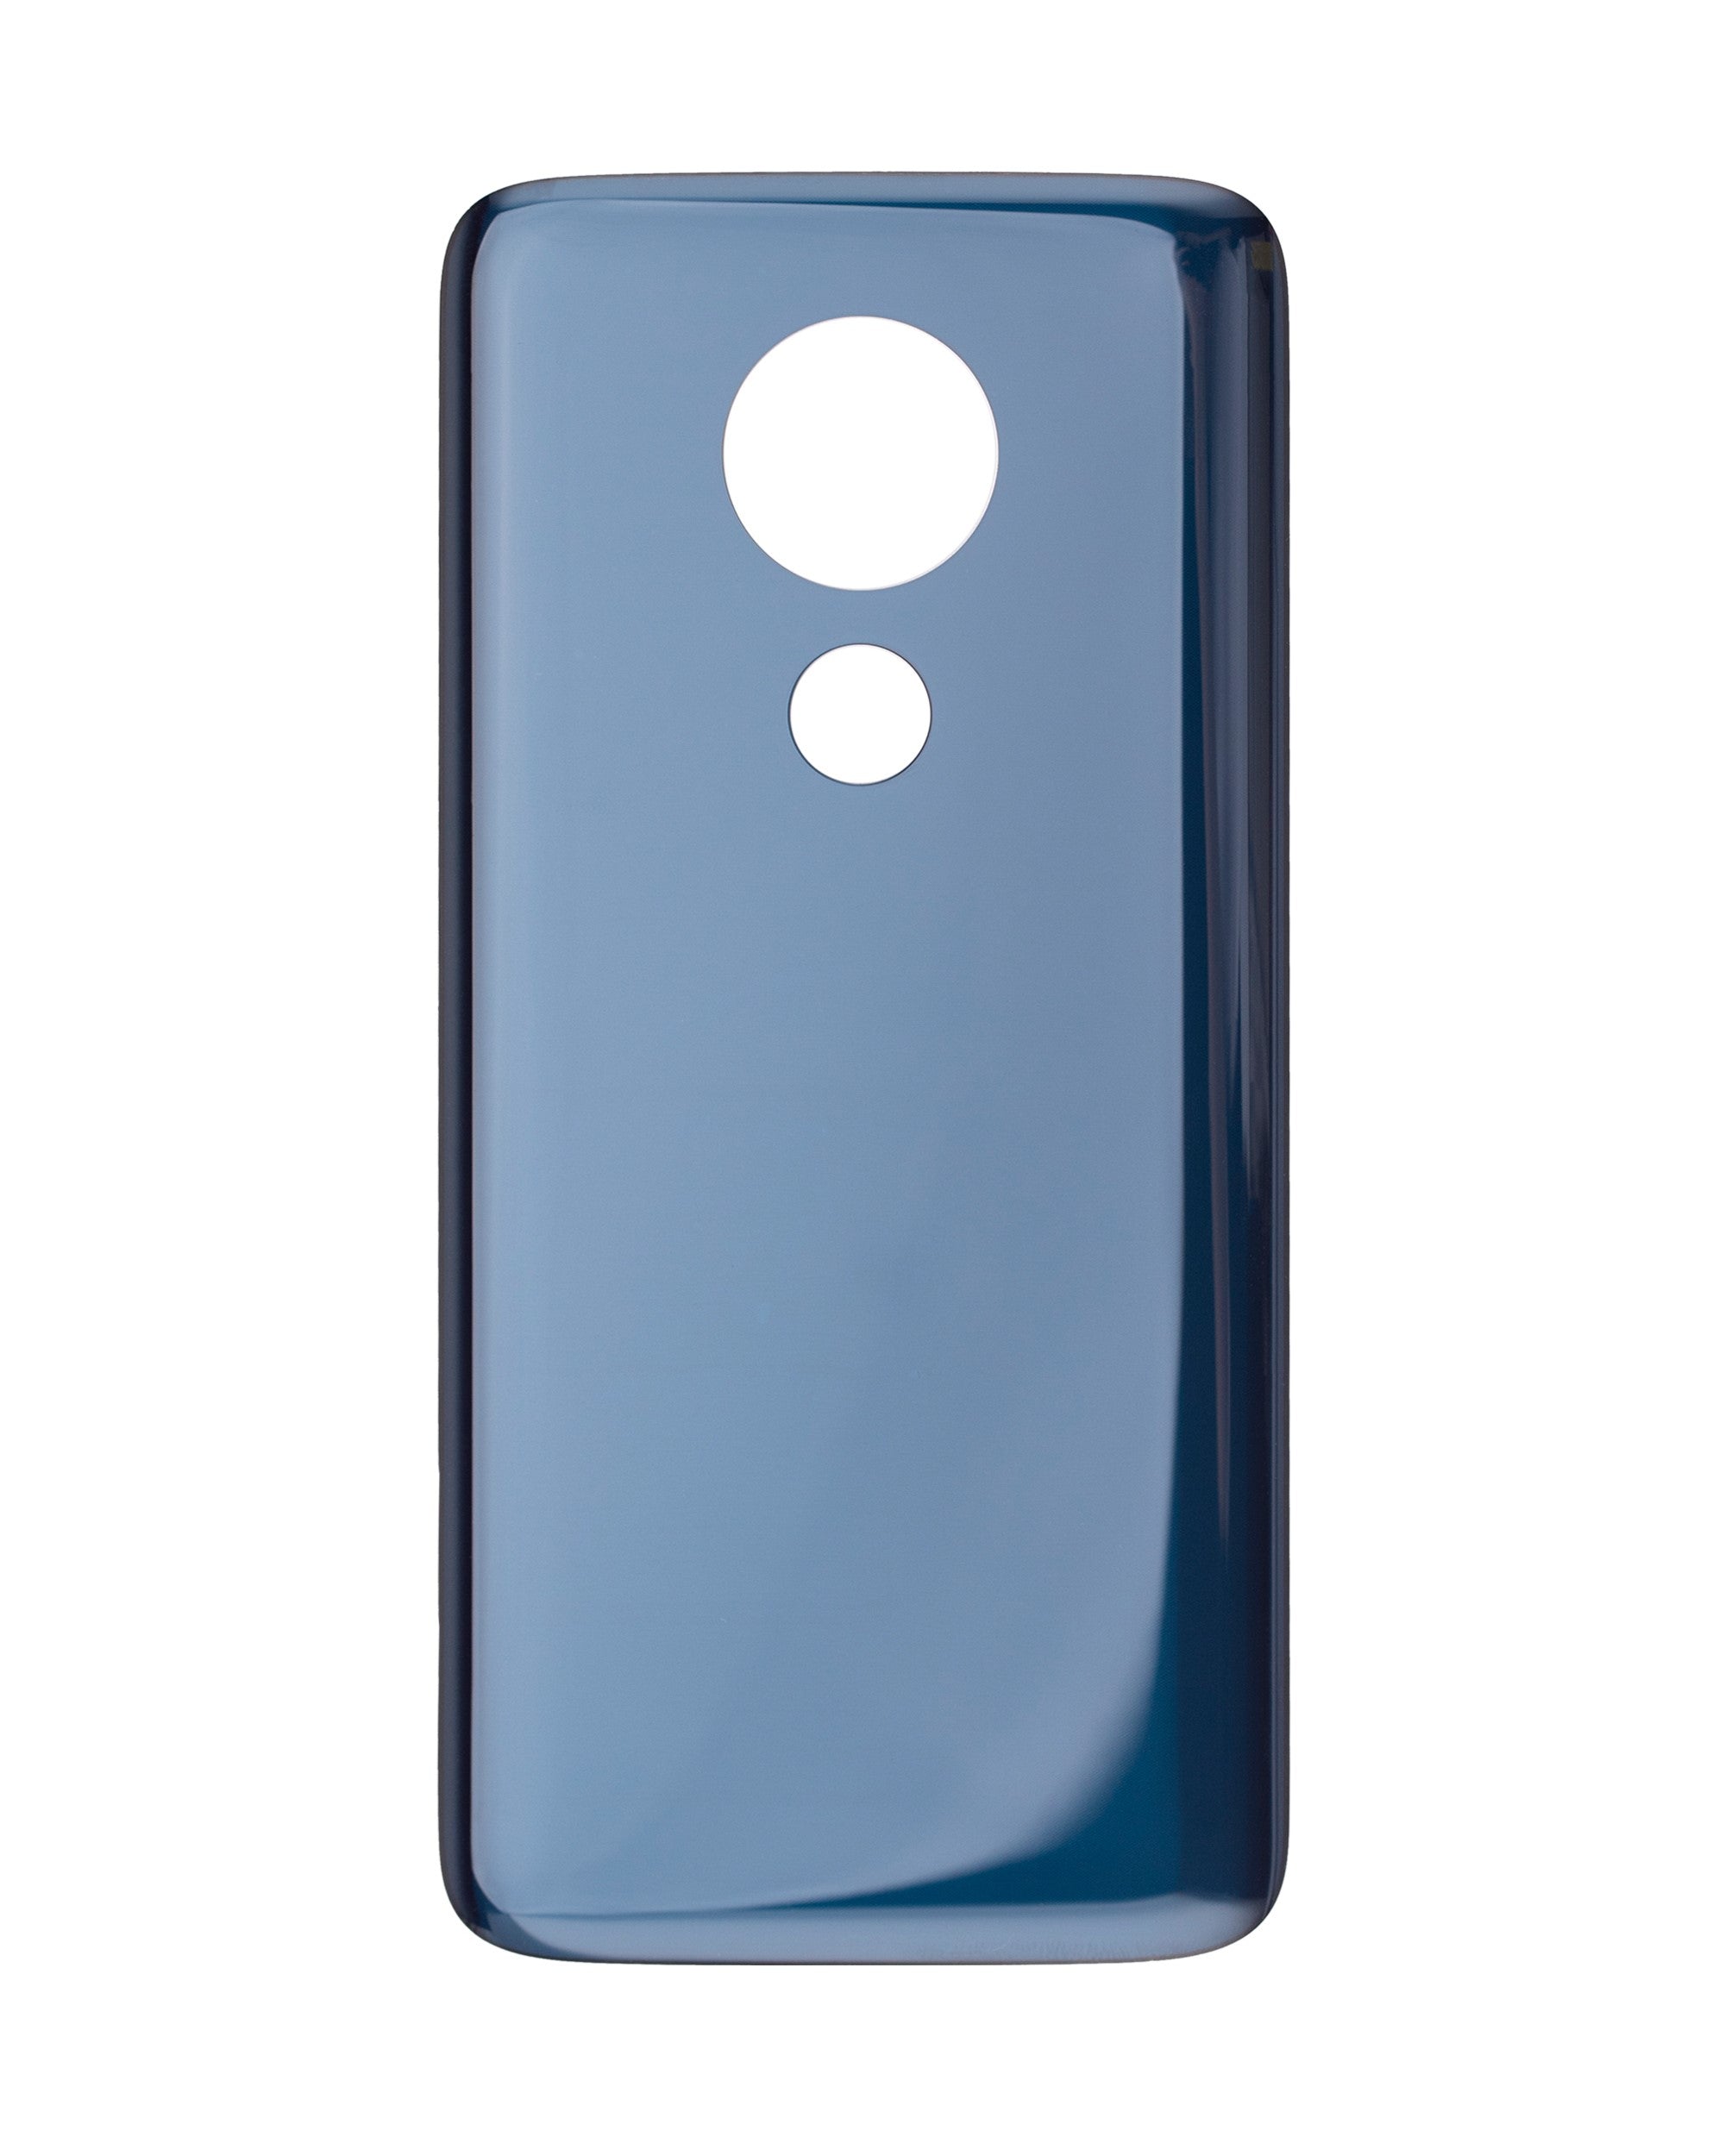 Back Cover for Motorola Moto G7 Power (XT1955-6 / XT1955Dl) / G7 Supra (XT1955-5 / 2019) / G7 Optimo Maxx (XT1955DL / 2019) (Blue) - OEM Pull